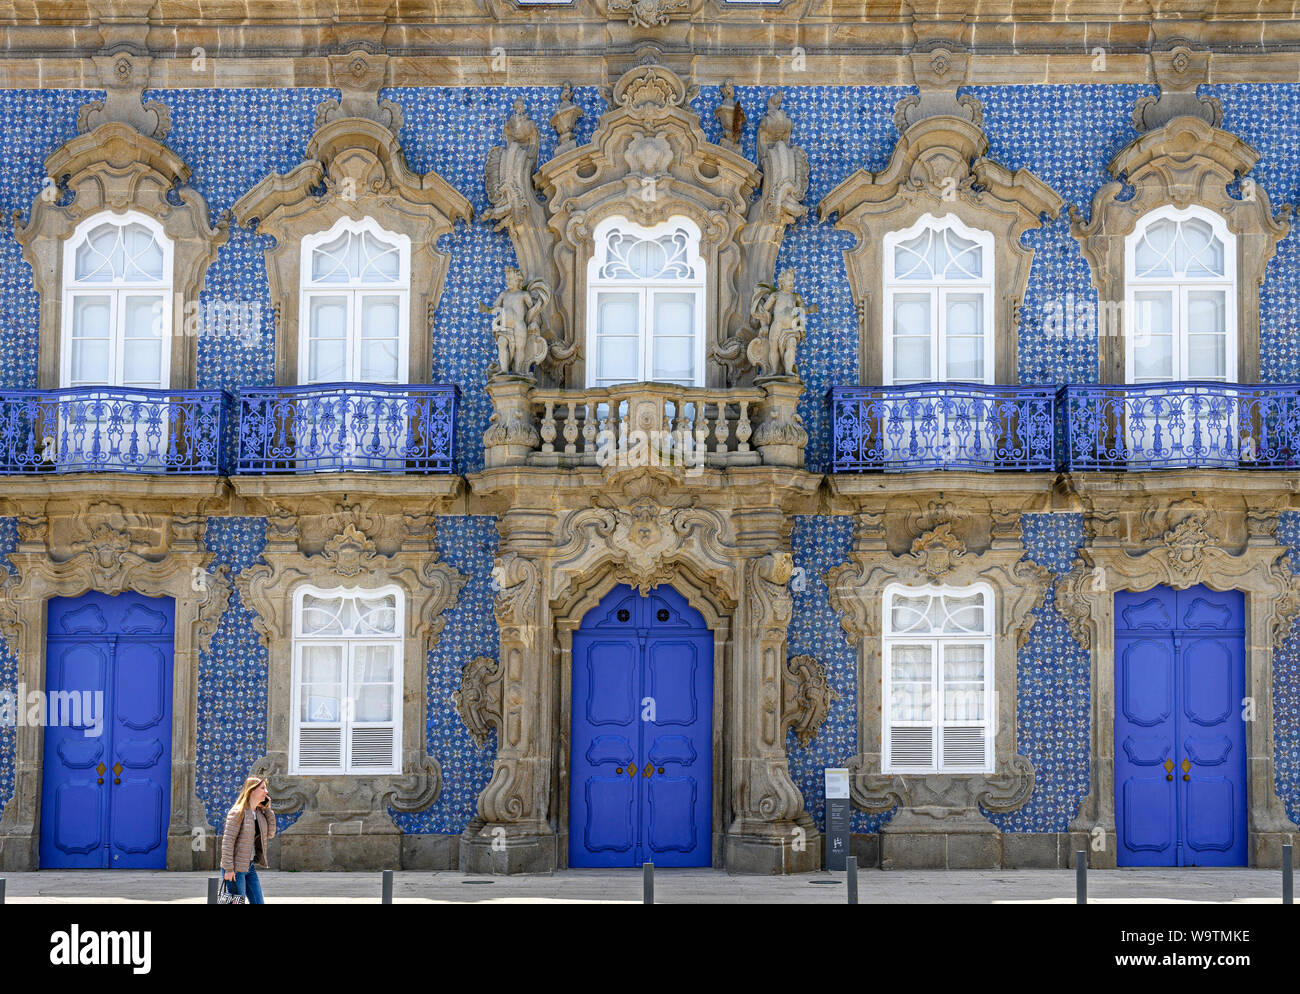 Le Palais n'a, Raio milieu du xviiie siècle au début de la fin du Baroque palais de style Rococo décoré de tuiles azulejo. dans le centre de Braga, au nord-ouest de Portu Banque D'Images